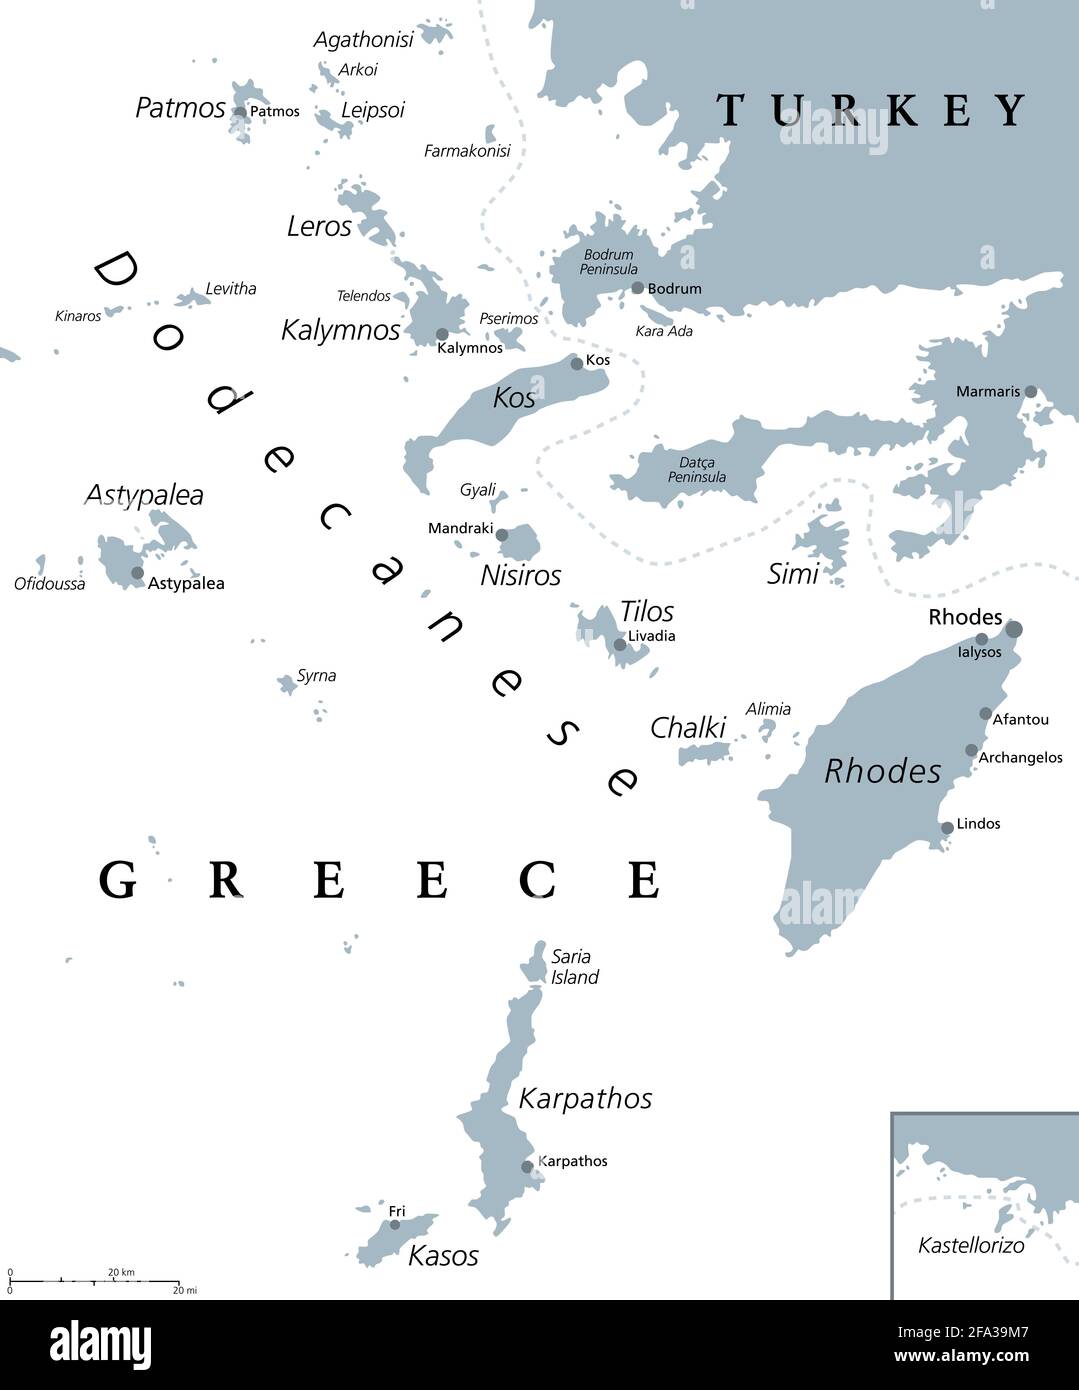 Dodekanesische Inseln, graue politische Landkarte. Griechische Inselgruppe in der südöstlichen Ägäis und im östlichen Mittelmeer vor der Küste der Türkei. Stockfoto